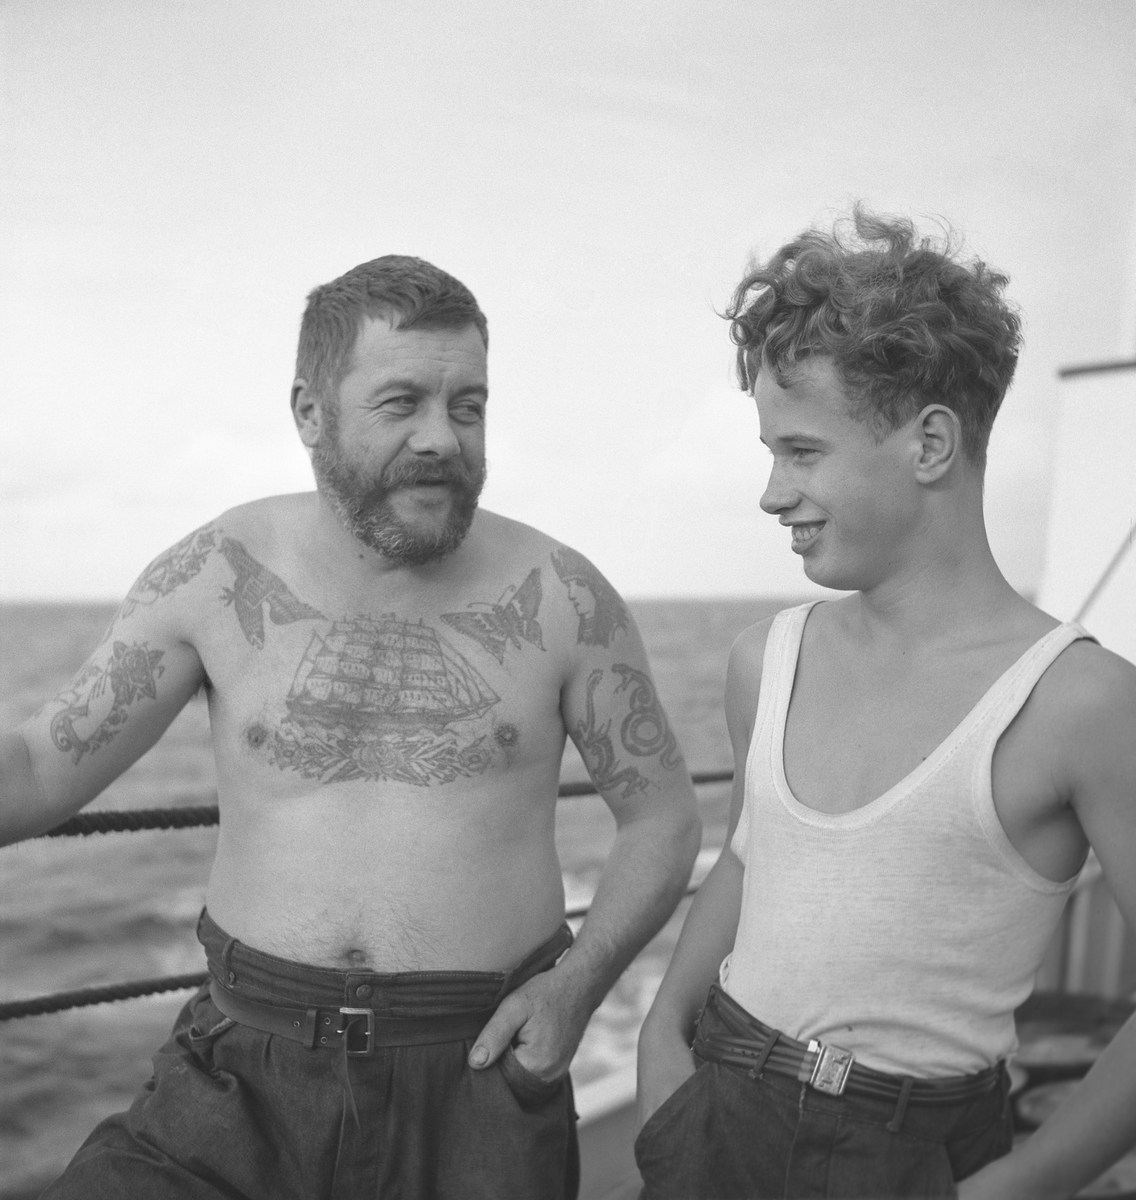 Två män ombord på ett fartyg. En äldre man med tatueringar samt en yngre man.